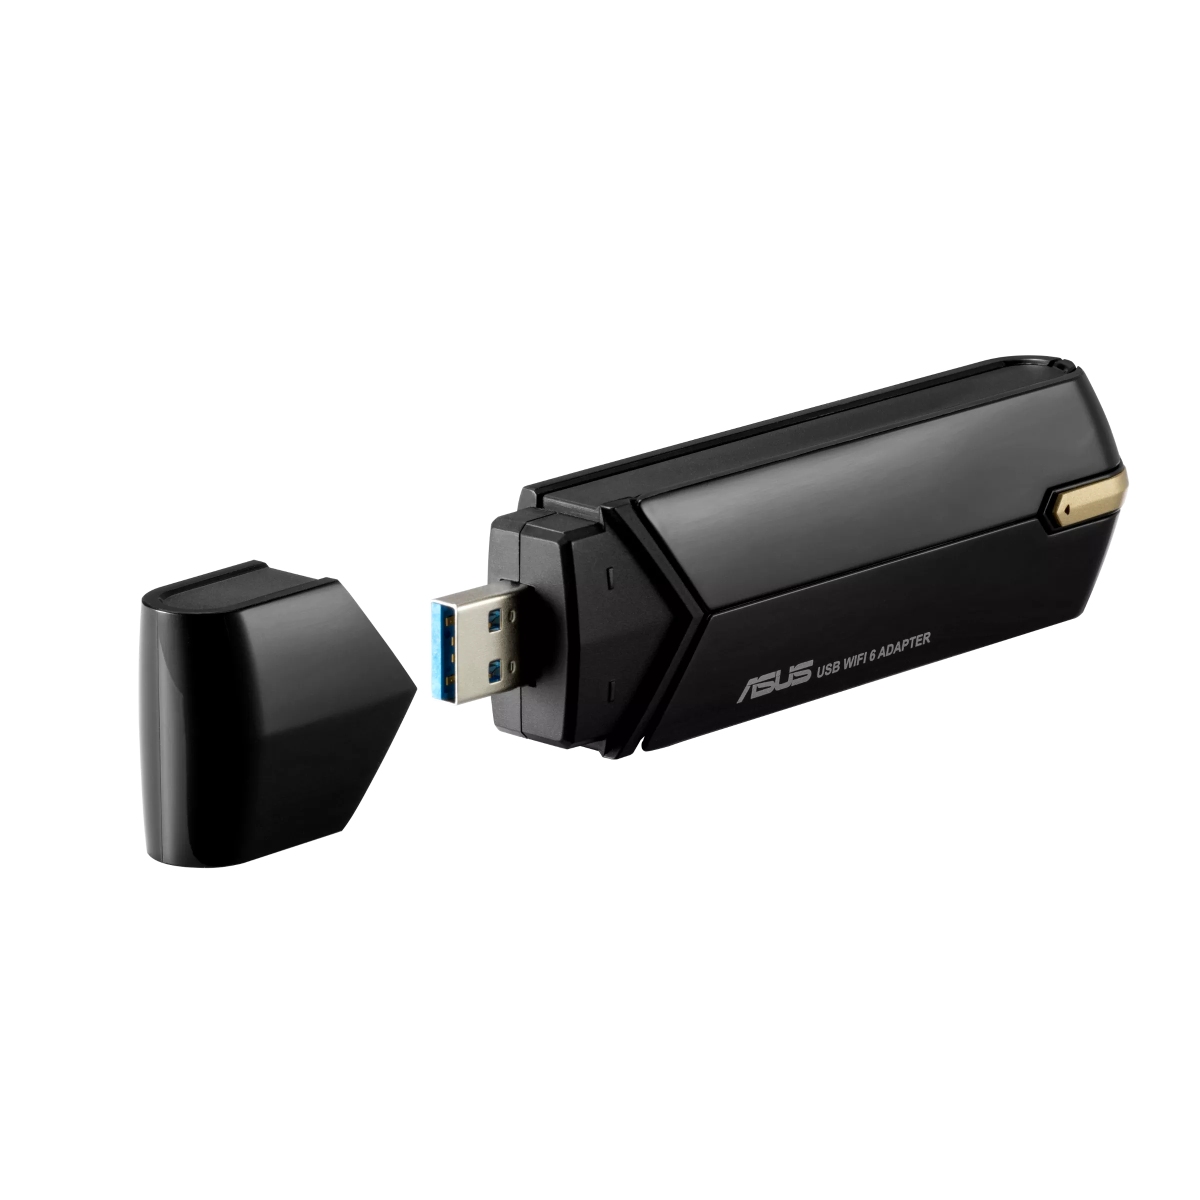 Obrázek ASUS USB-AX56 Dual Band wireless AX1800,USB client